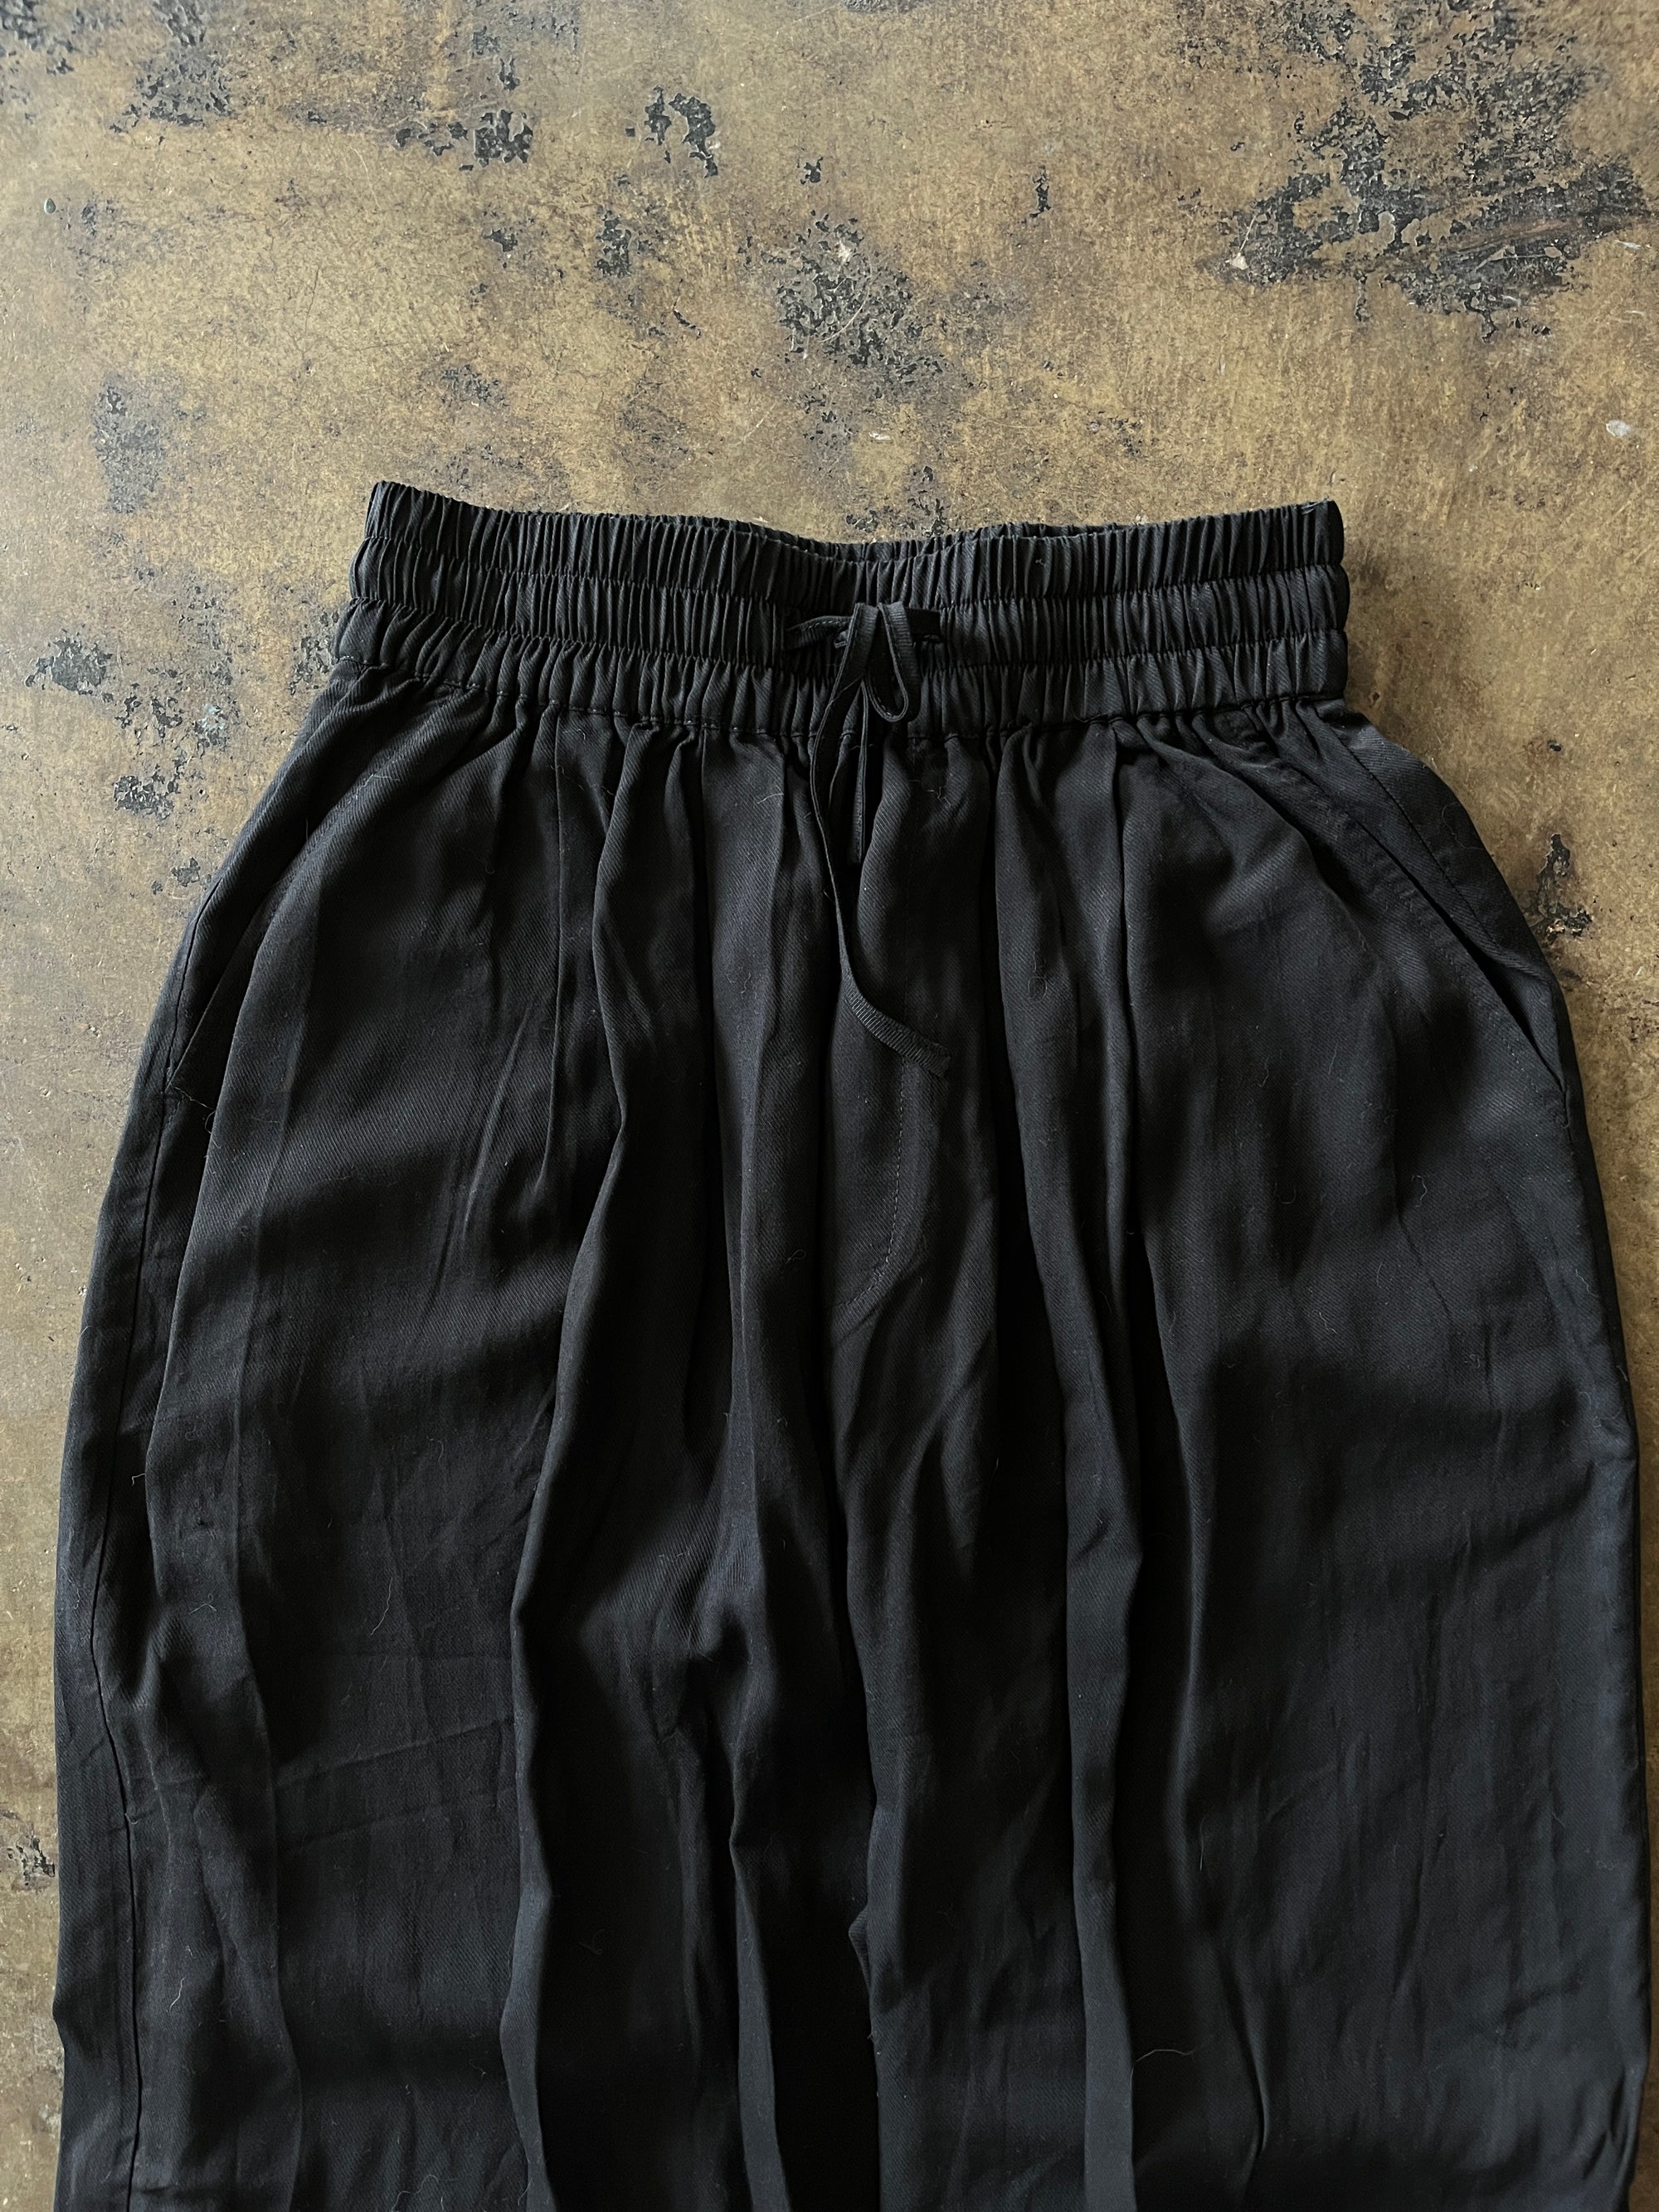 TWIN Black Pants